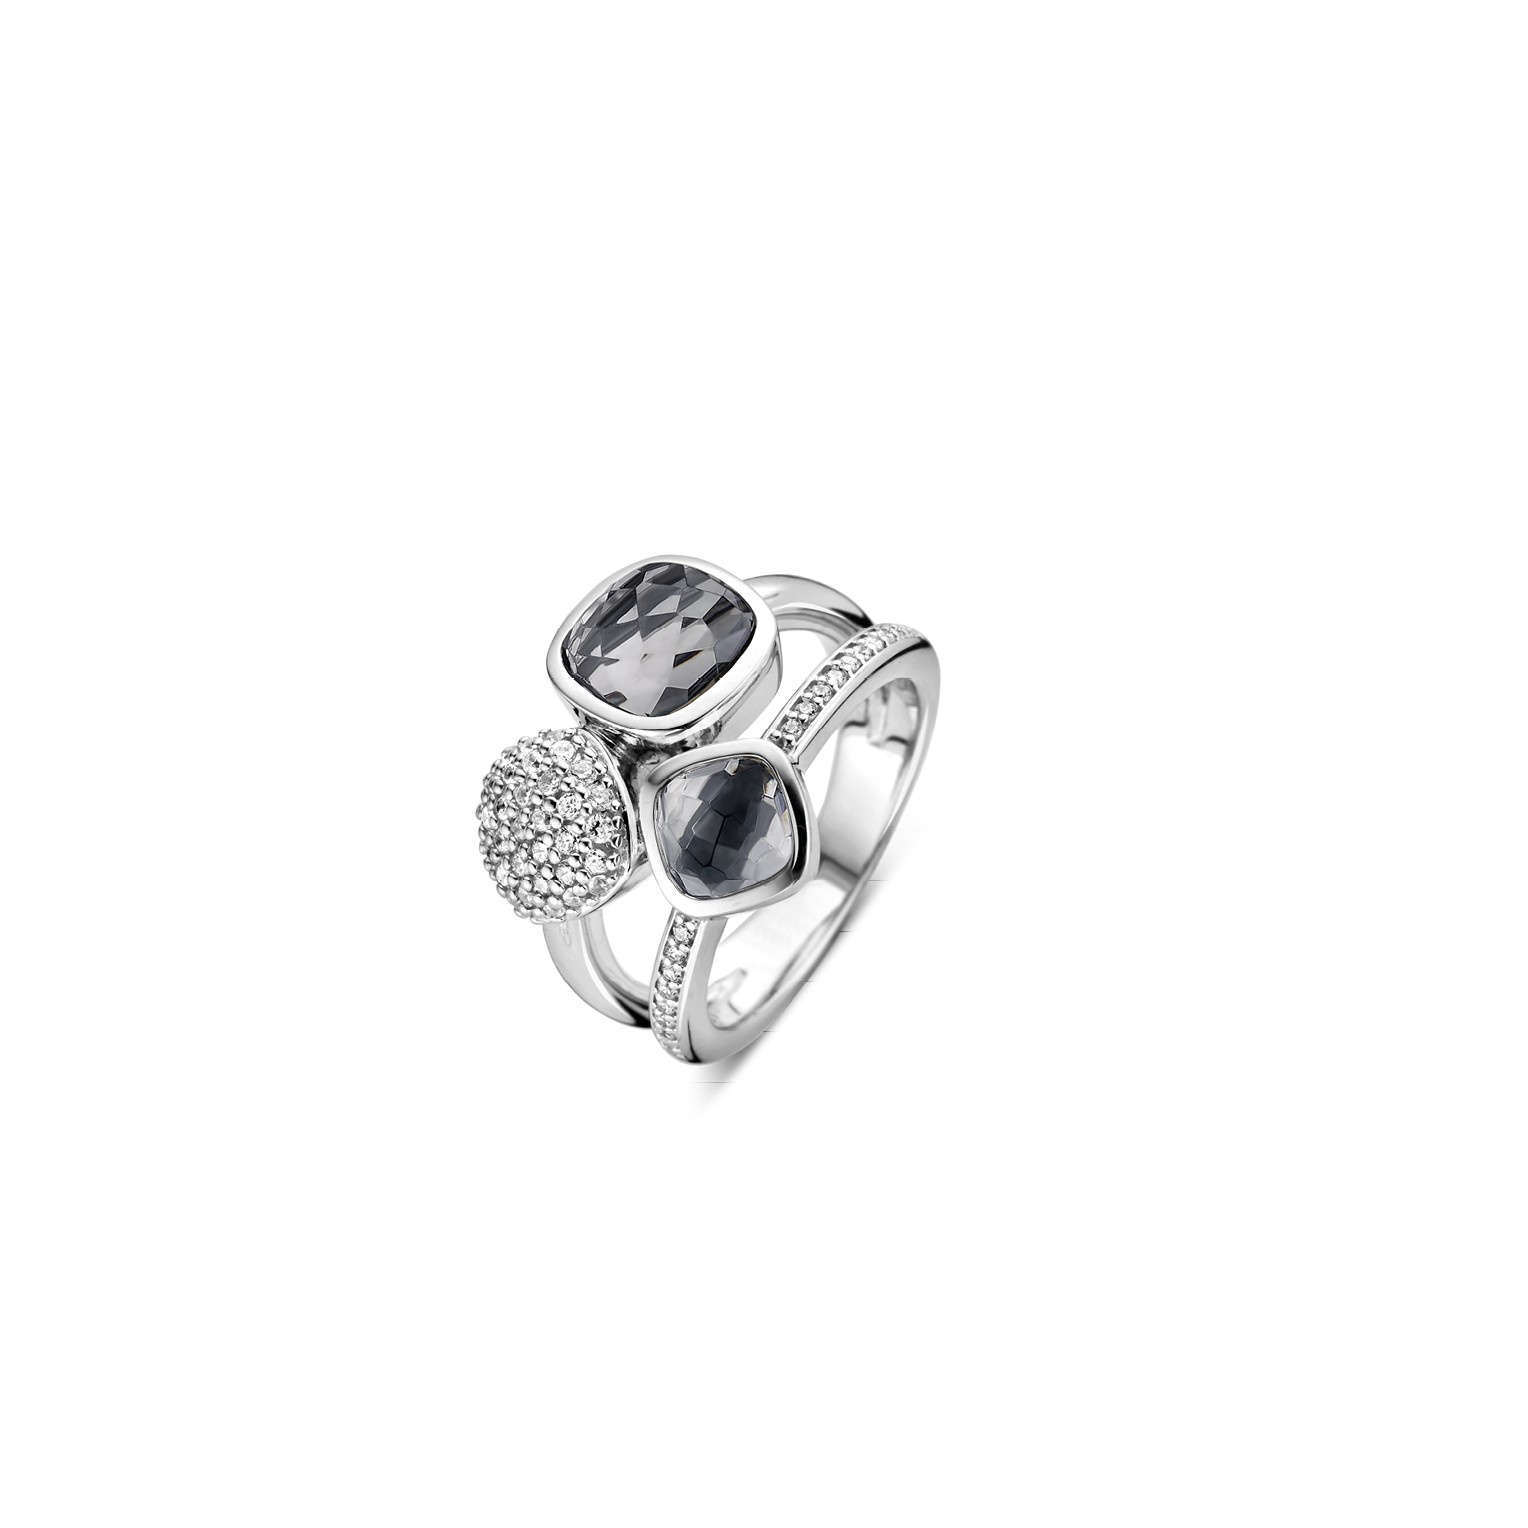 TI SENTO - Milano Ring 12182GB Gala Jewelers Inc. White Oak, PA